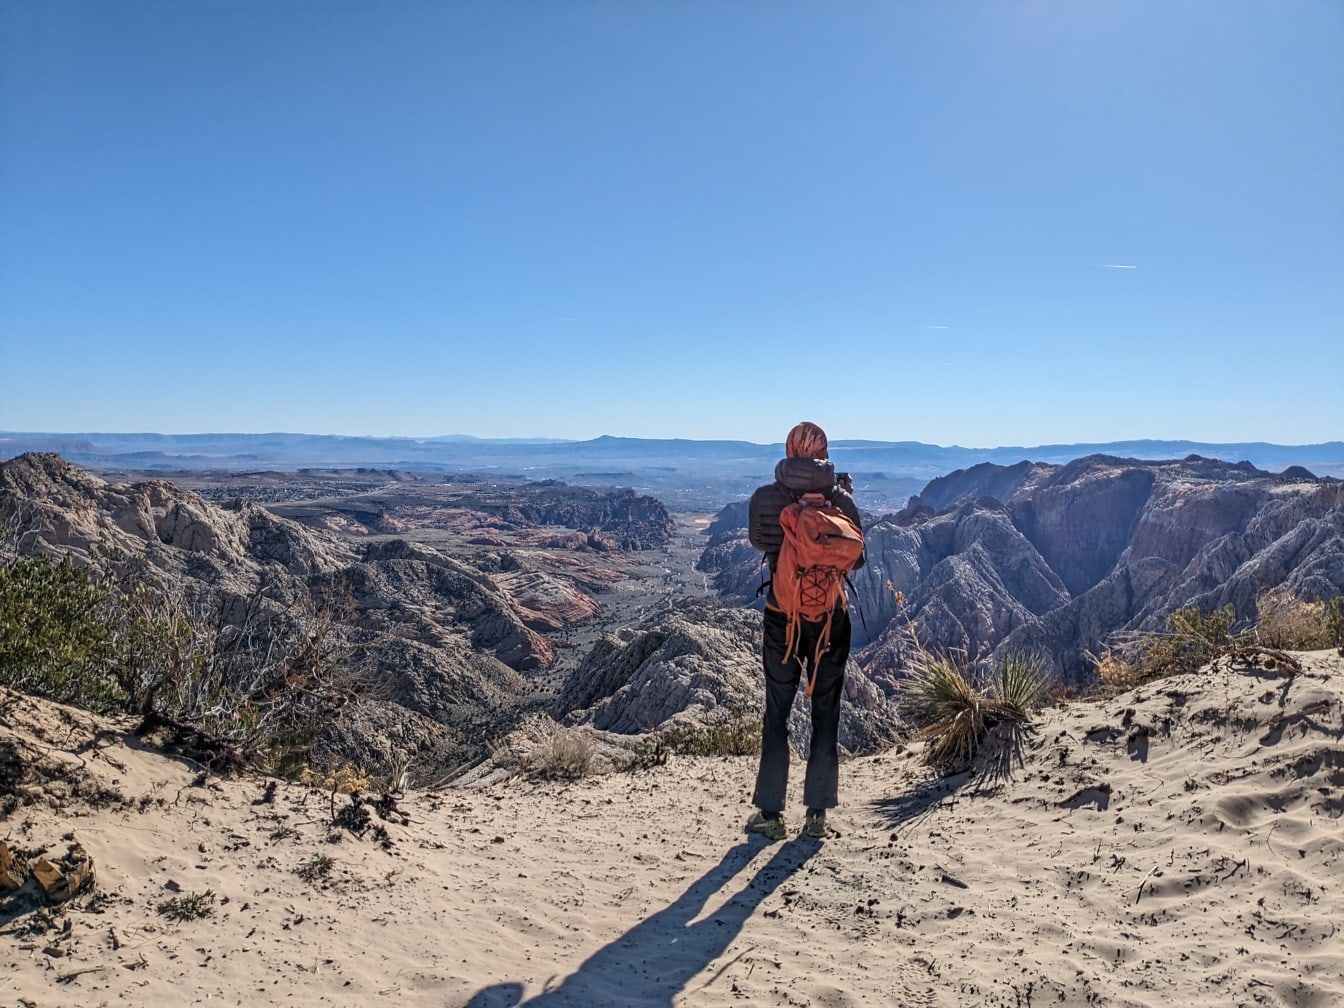 Hátizsákos túrázó a sivatagi sziklán állva élvezi a sivatagi völgy panorámáját